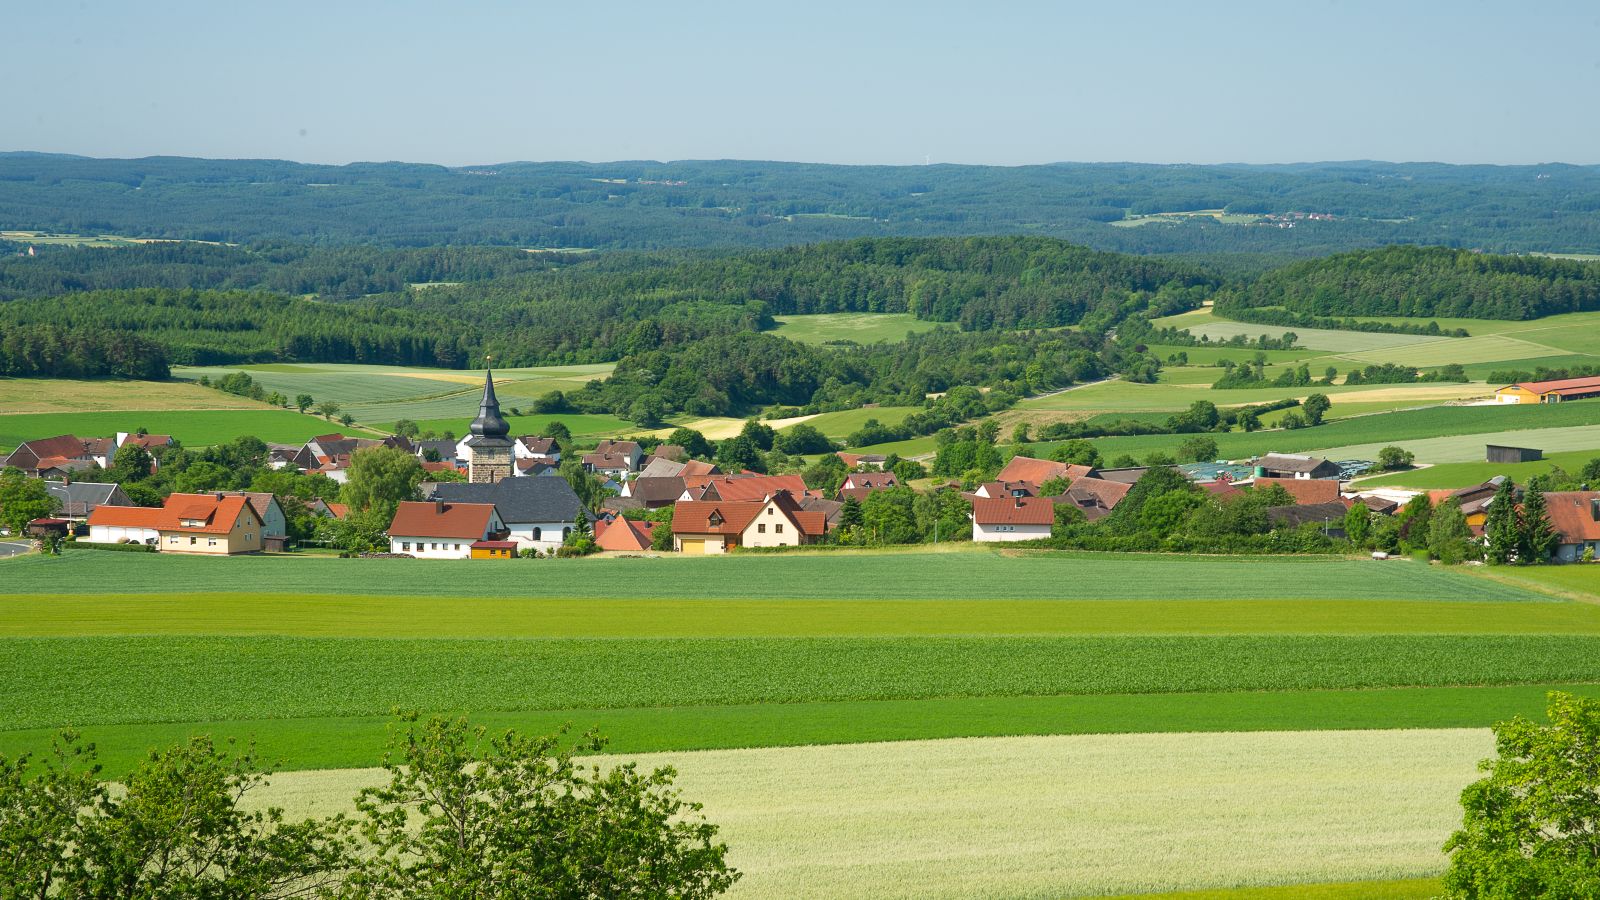 Zu sehen ist ein Dorf in einer grünen Landschaft mit Feldern und Wäldern.